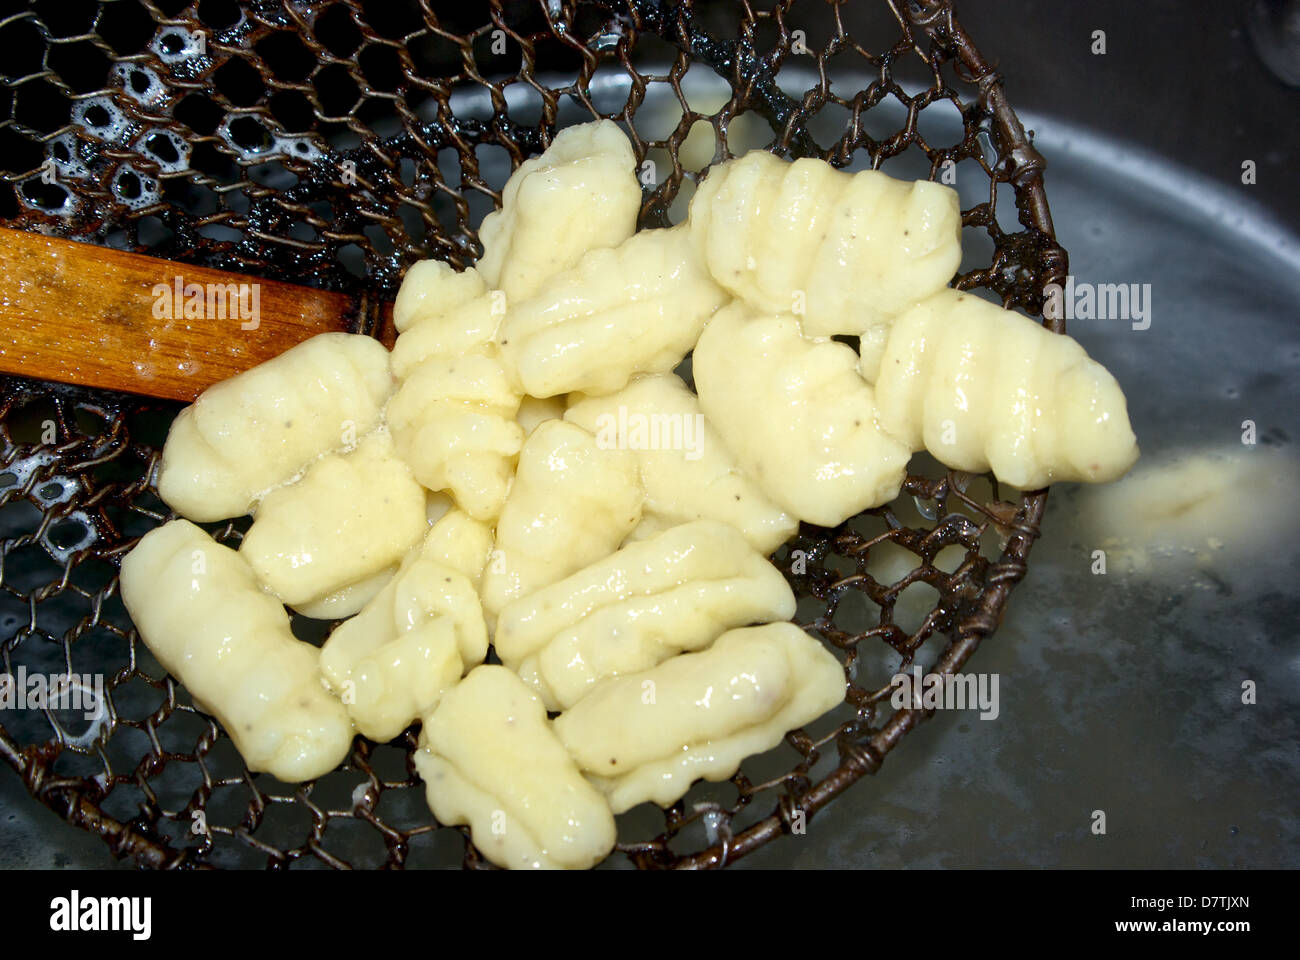 Cucinato increspato e arricciato gnocchi di pasta di patate che viene sollevato dalla pentola di acqua bollente con reticella di metallo Foto Stock